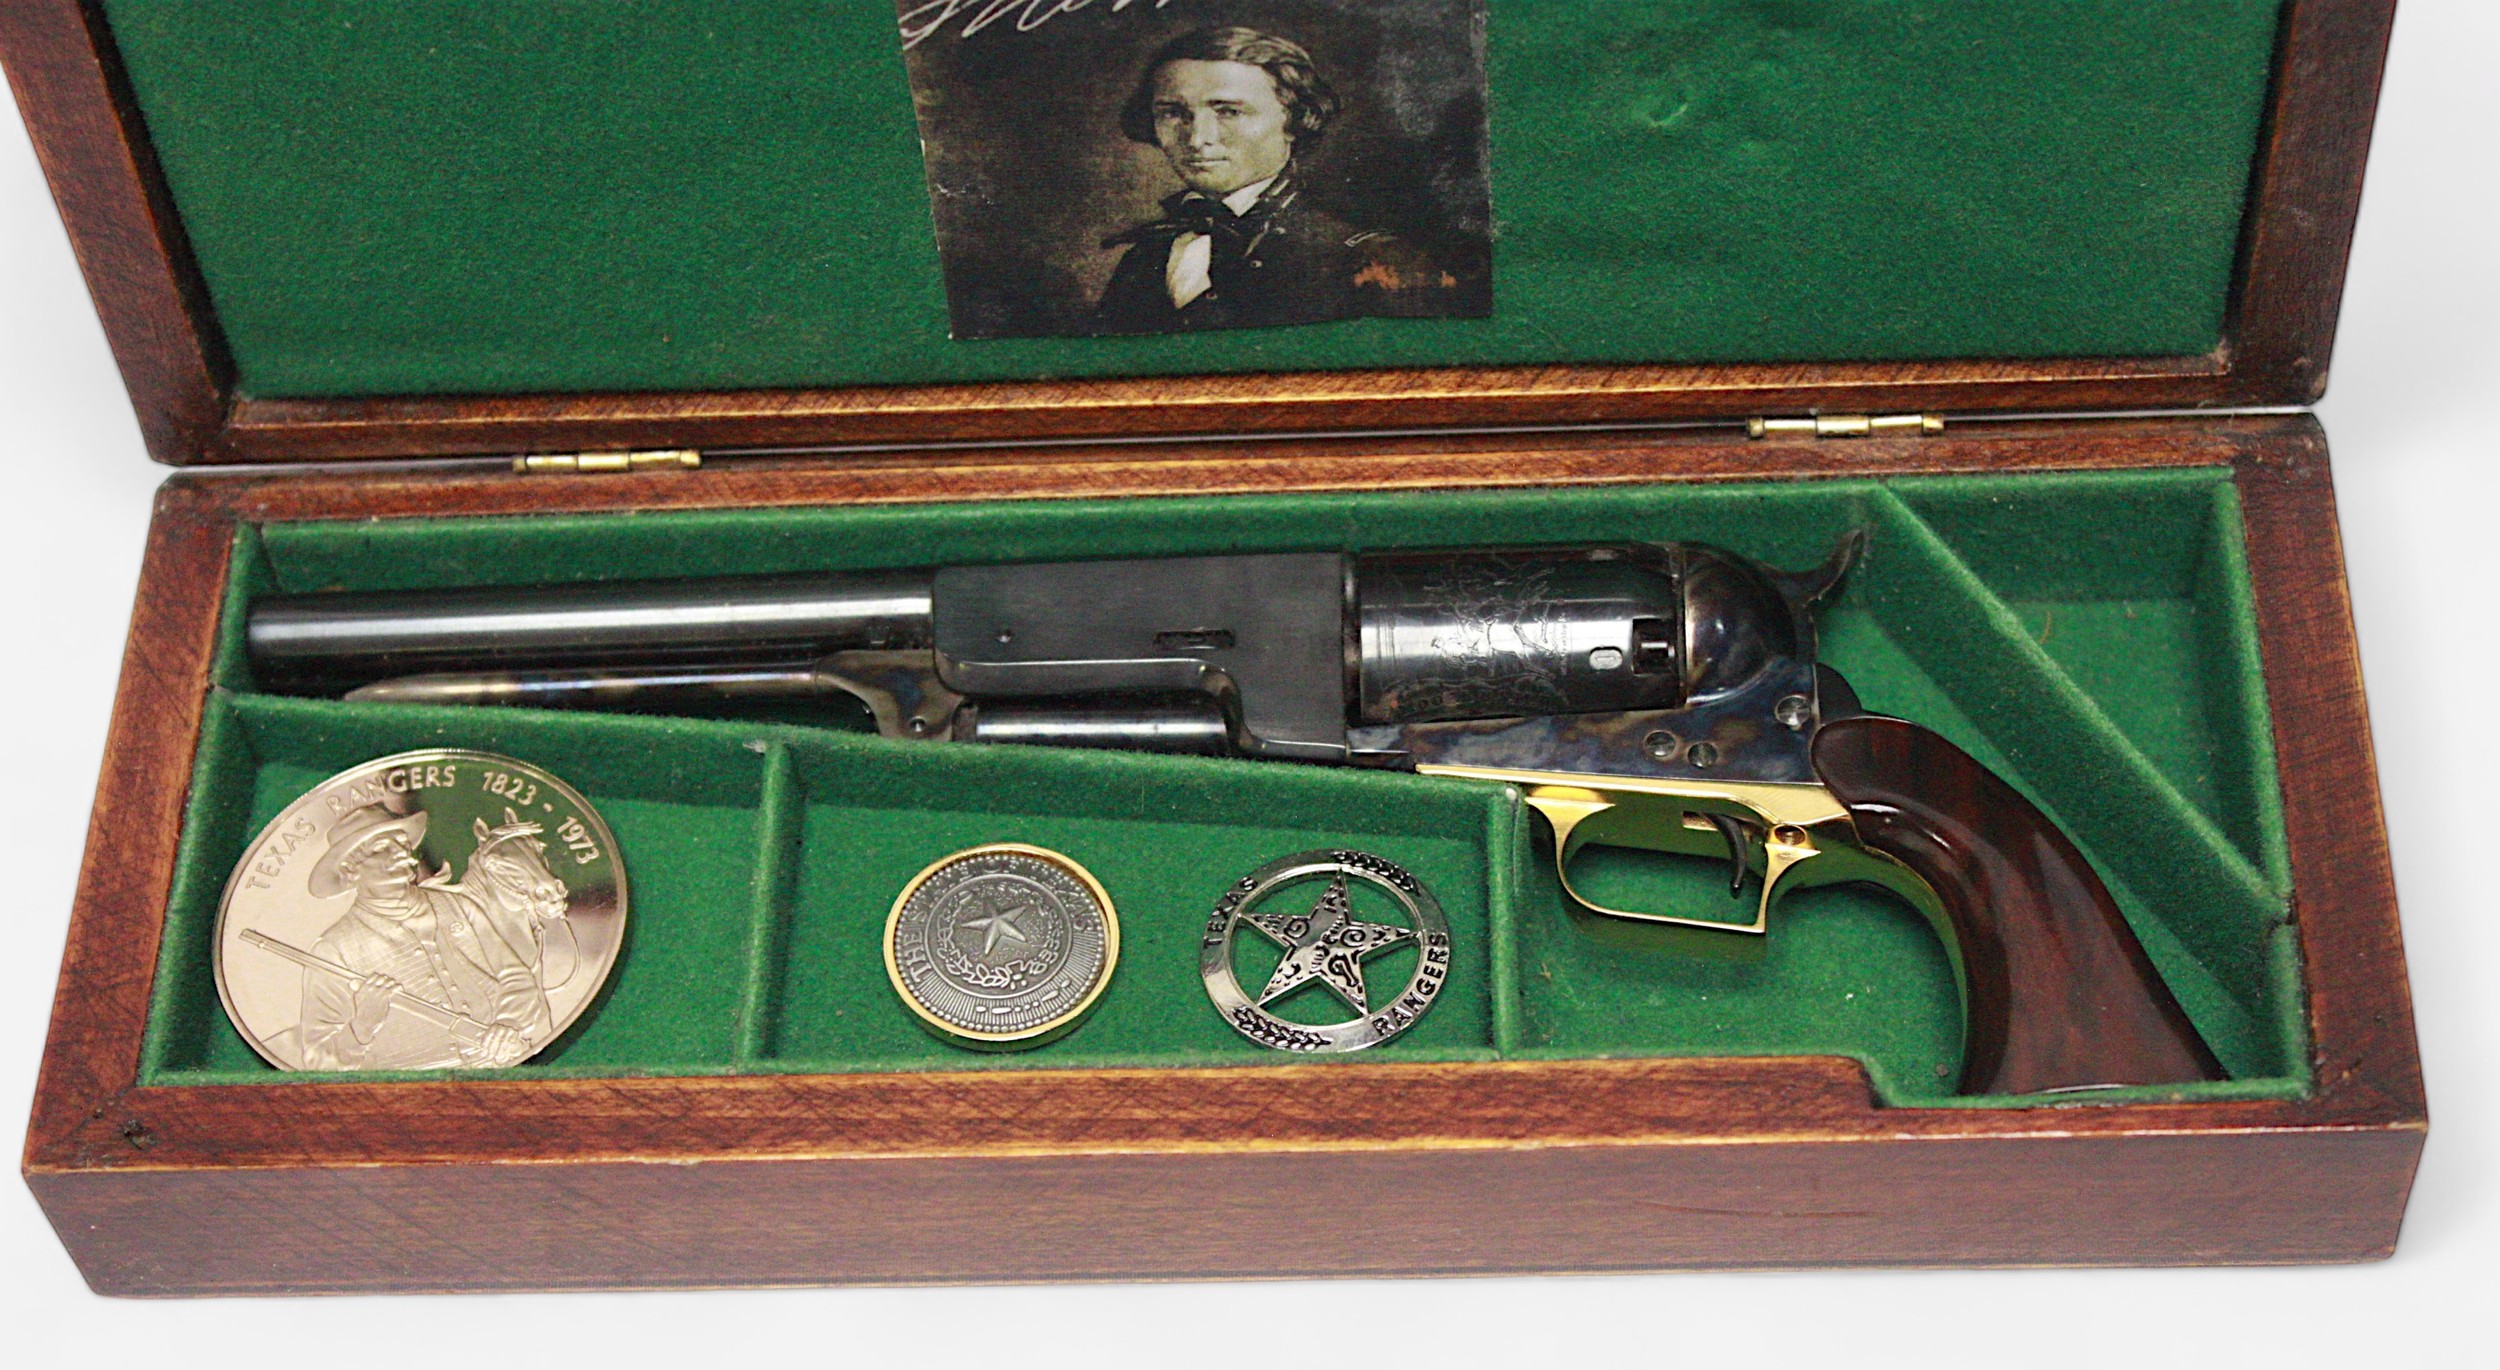 An 1847 Walker Colt Miniature - an inert miniature scale reproduction six shot revolver, USMR - Image 2 of 3